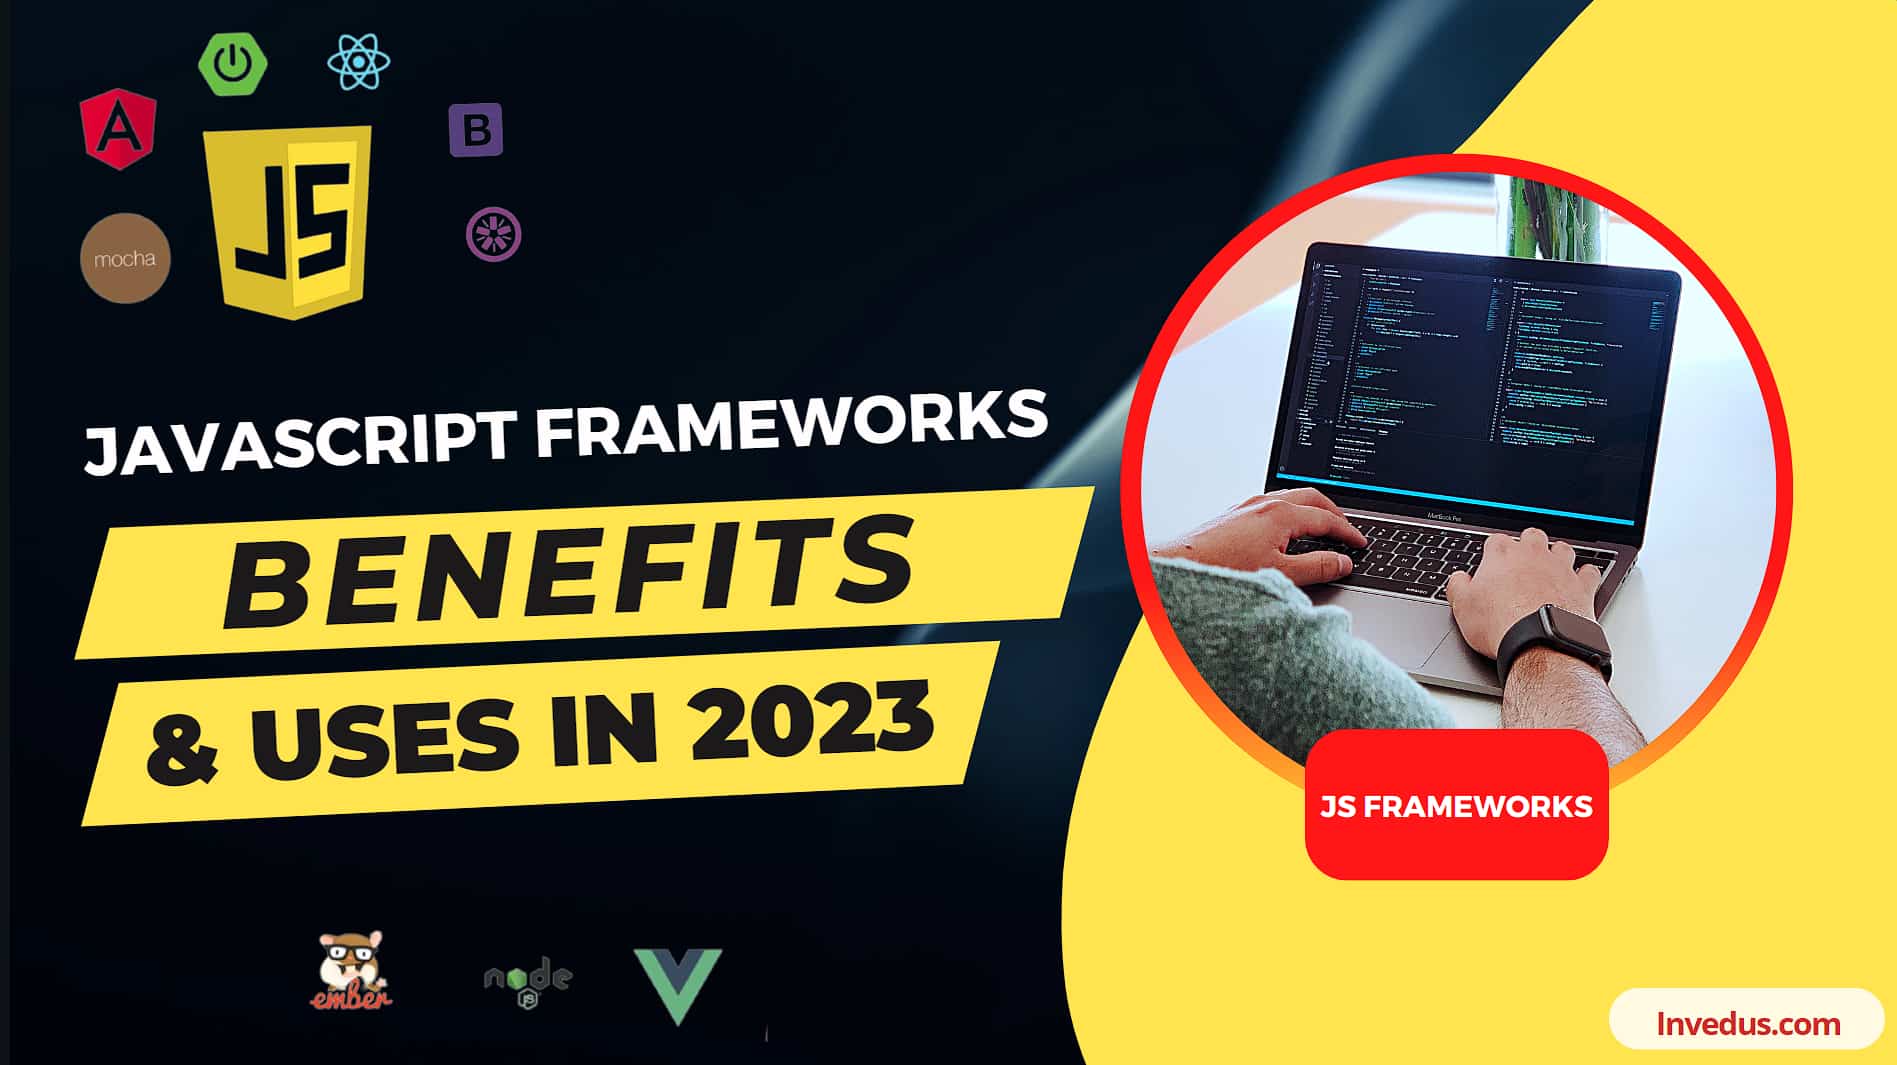 Javascript Frameworks – JS Frameworks Benefits & Uses in 2023